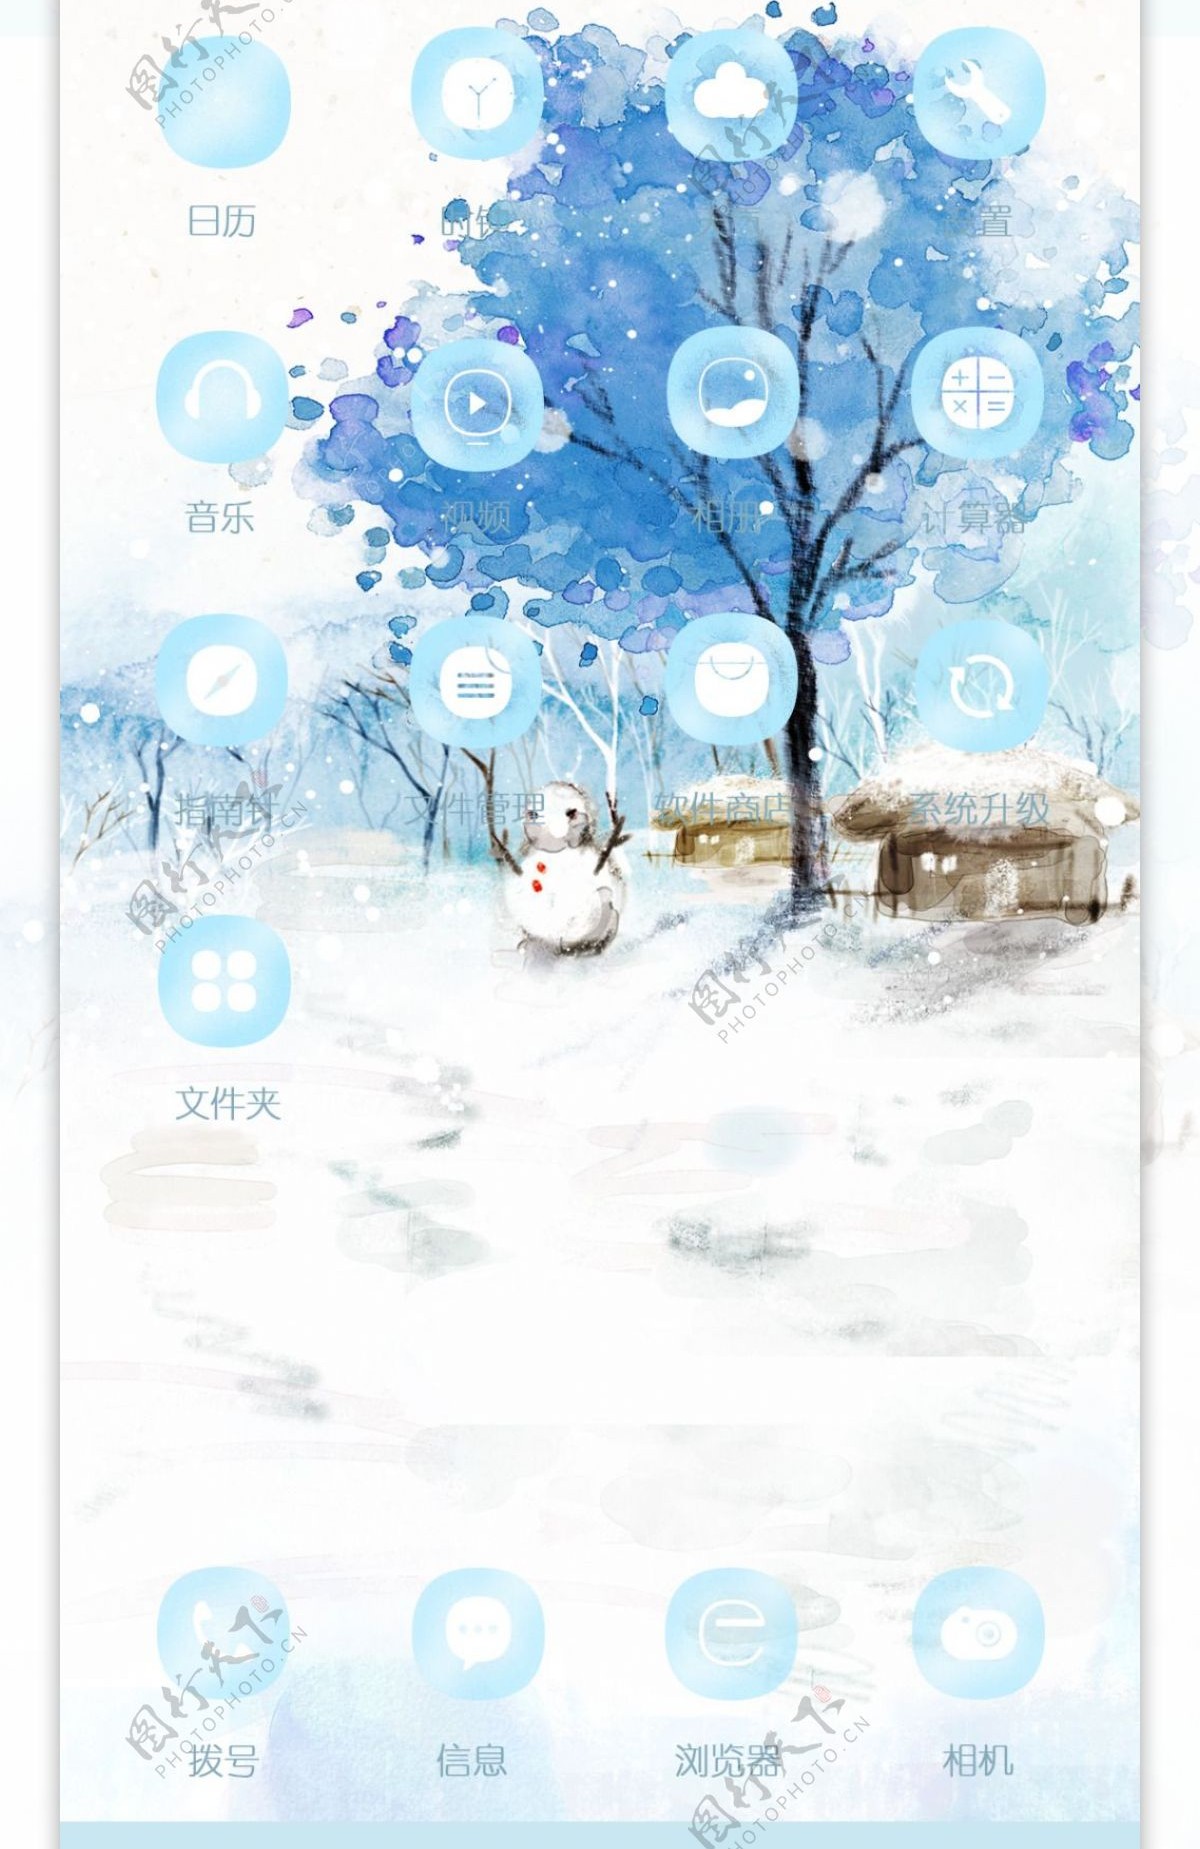 雪人手机主题设计